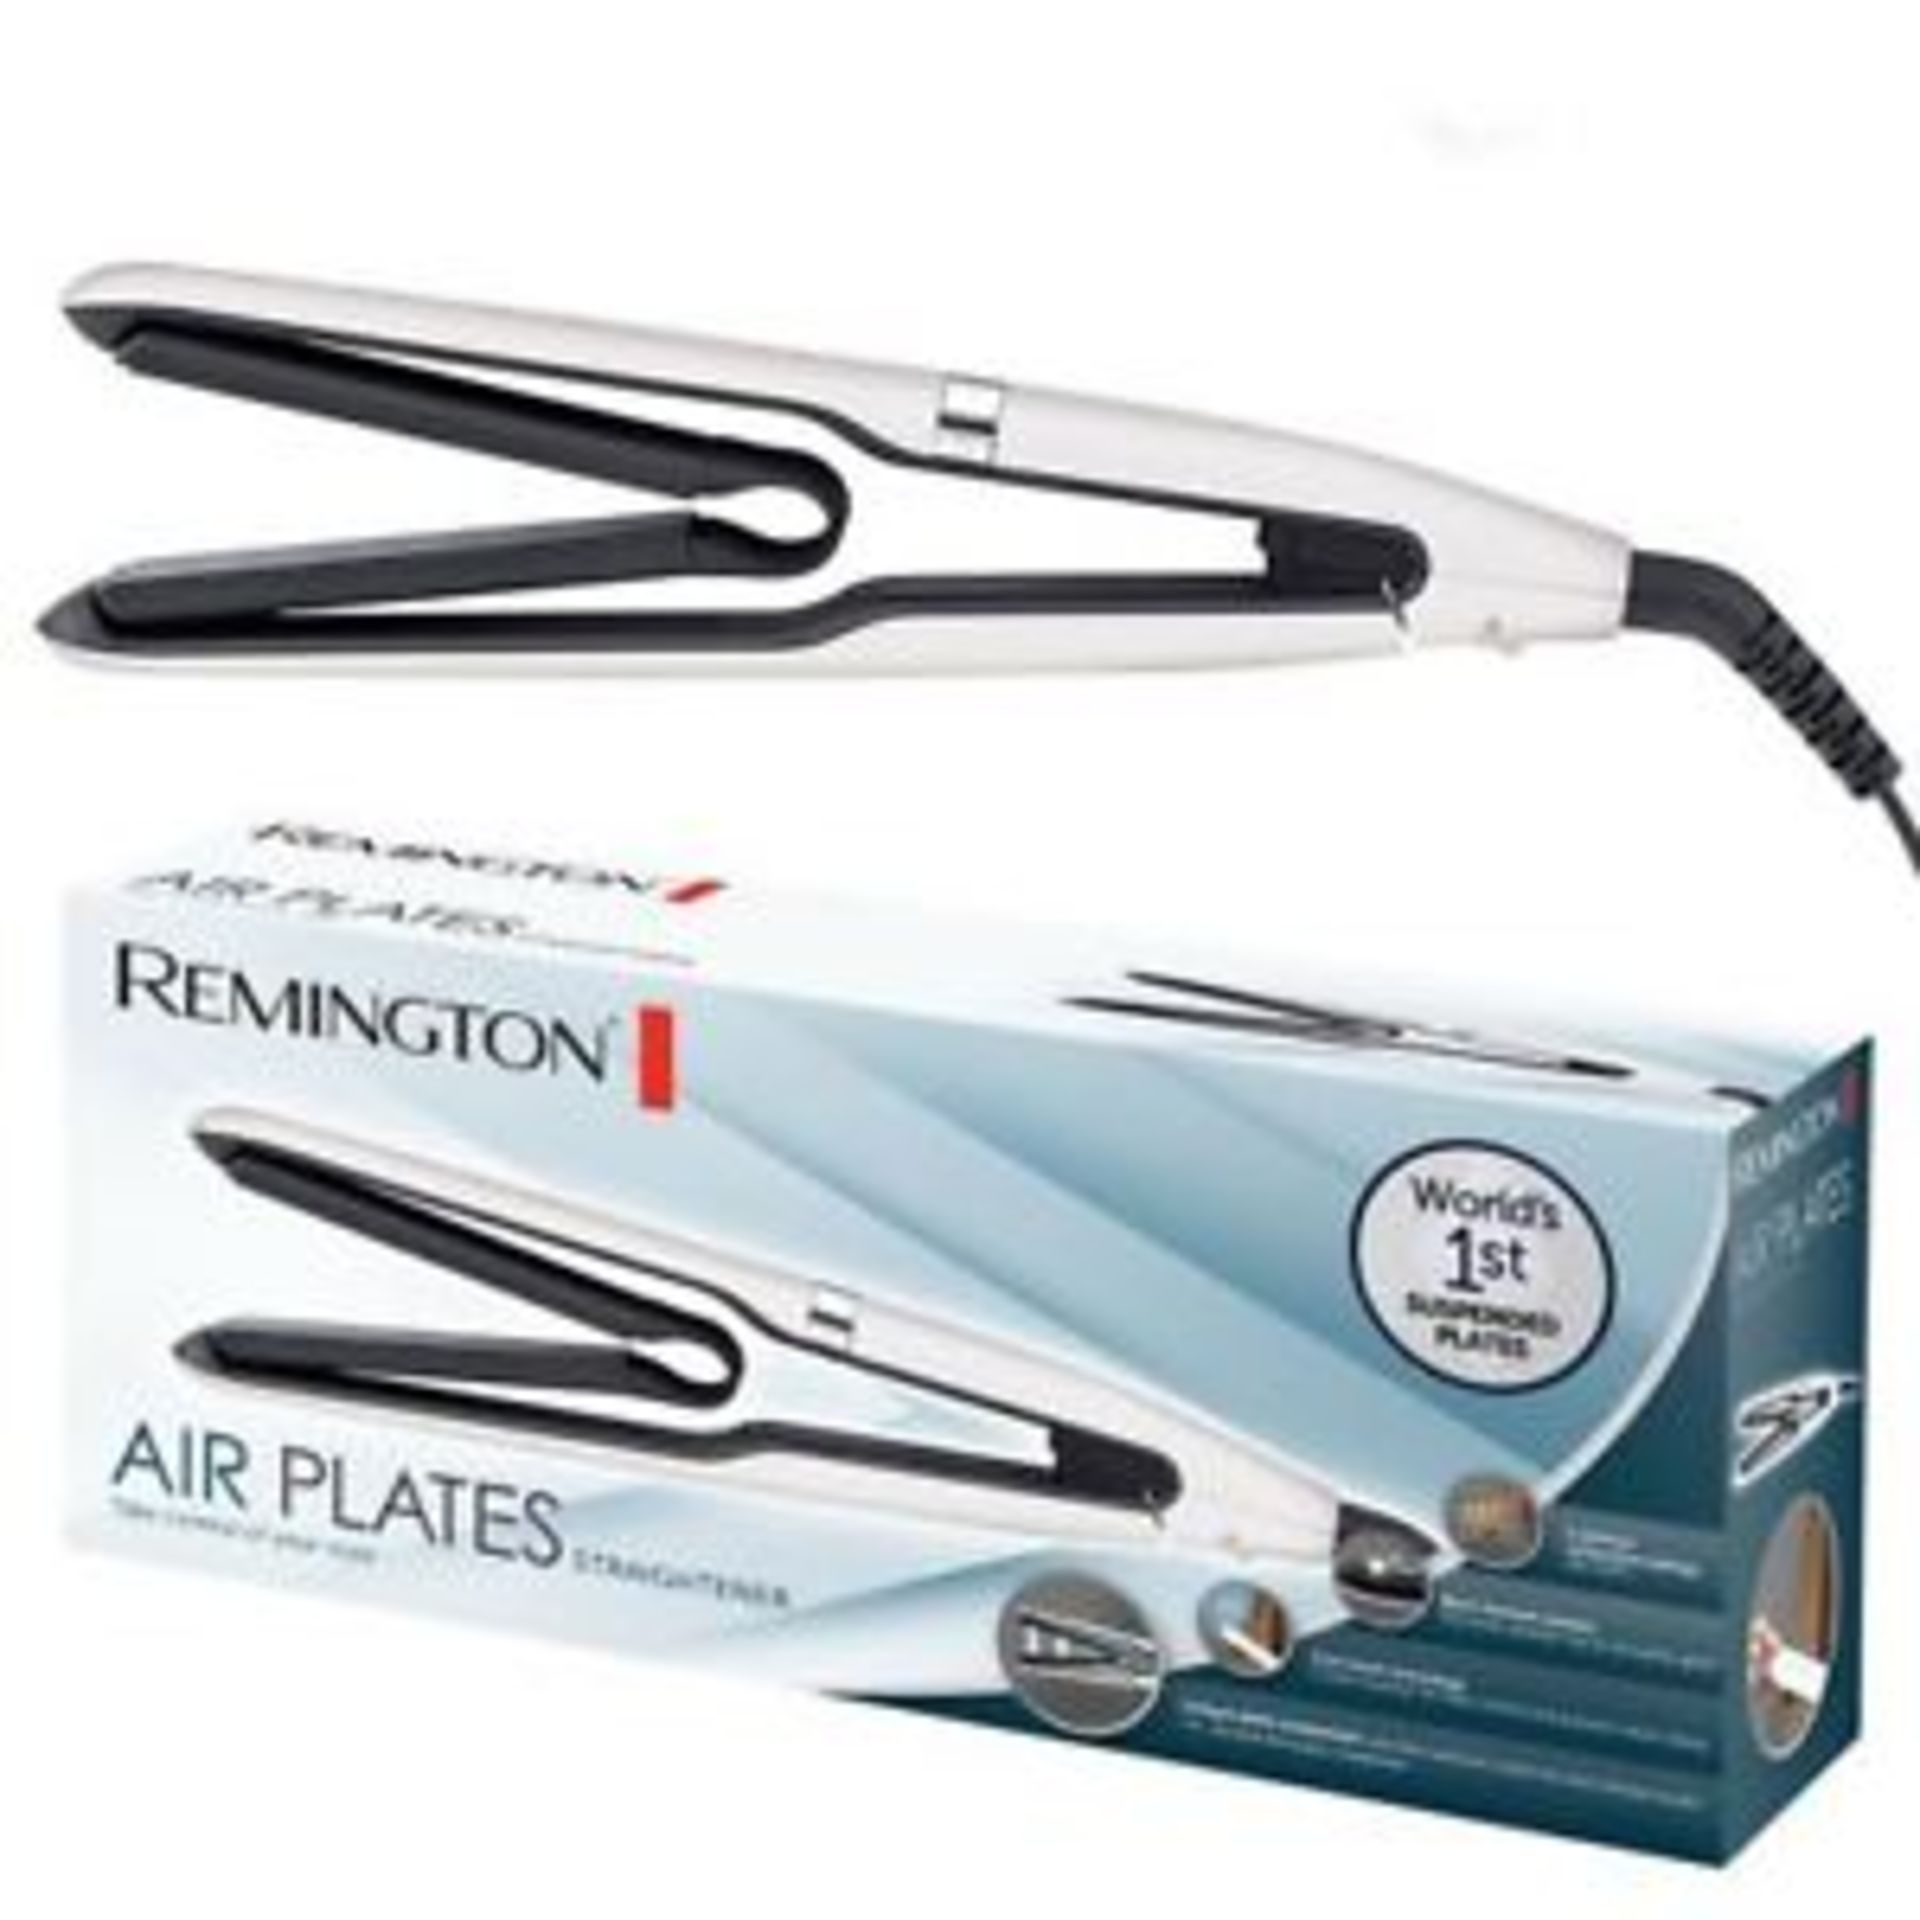 + VAT Brand New Remington Air Plates Straightener - Argos Price Â£79.99 - 5 Optimum Temperature - Image 4 of 4